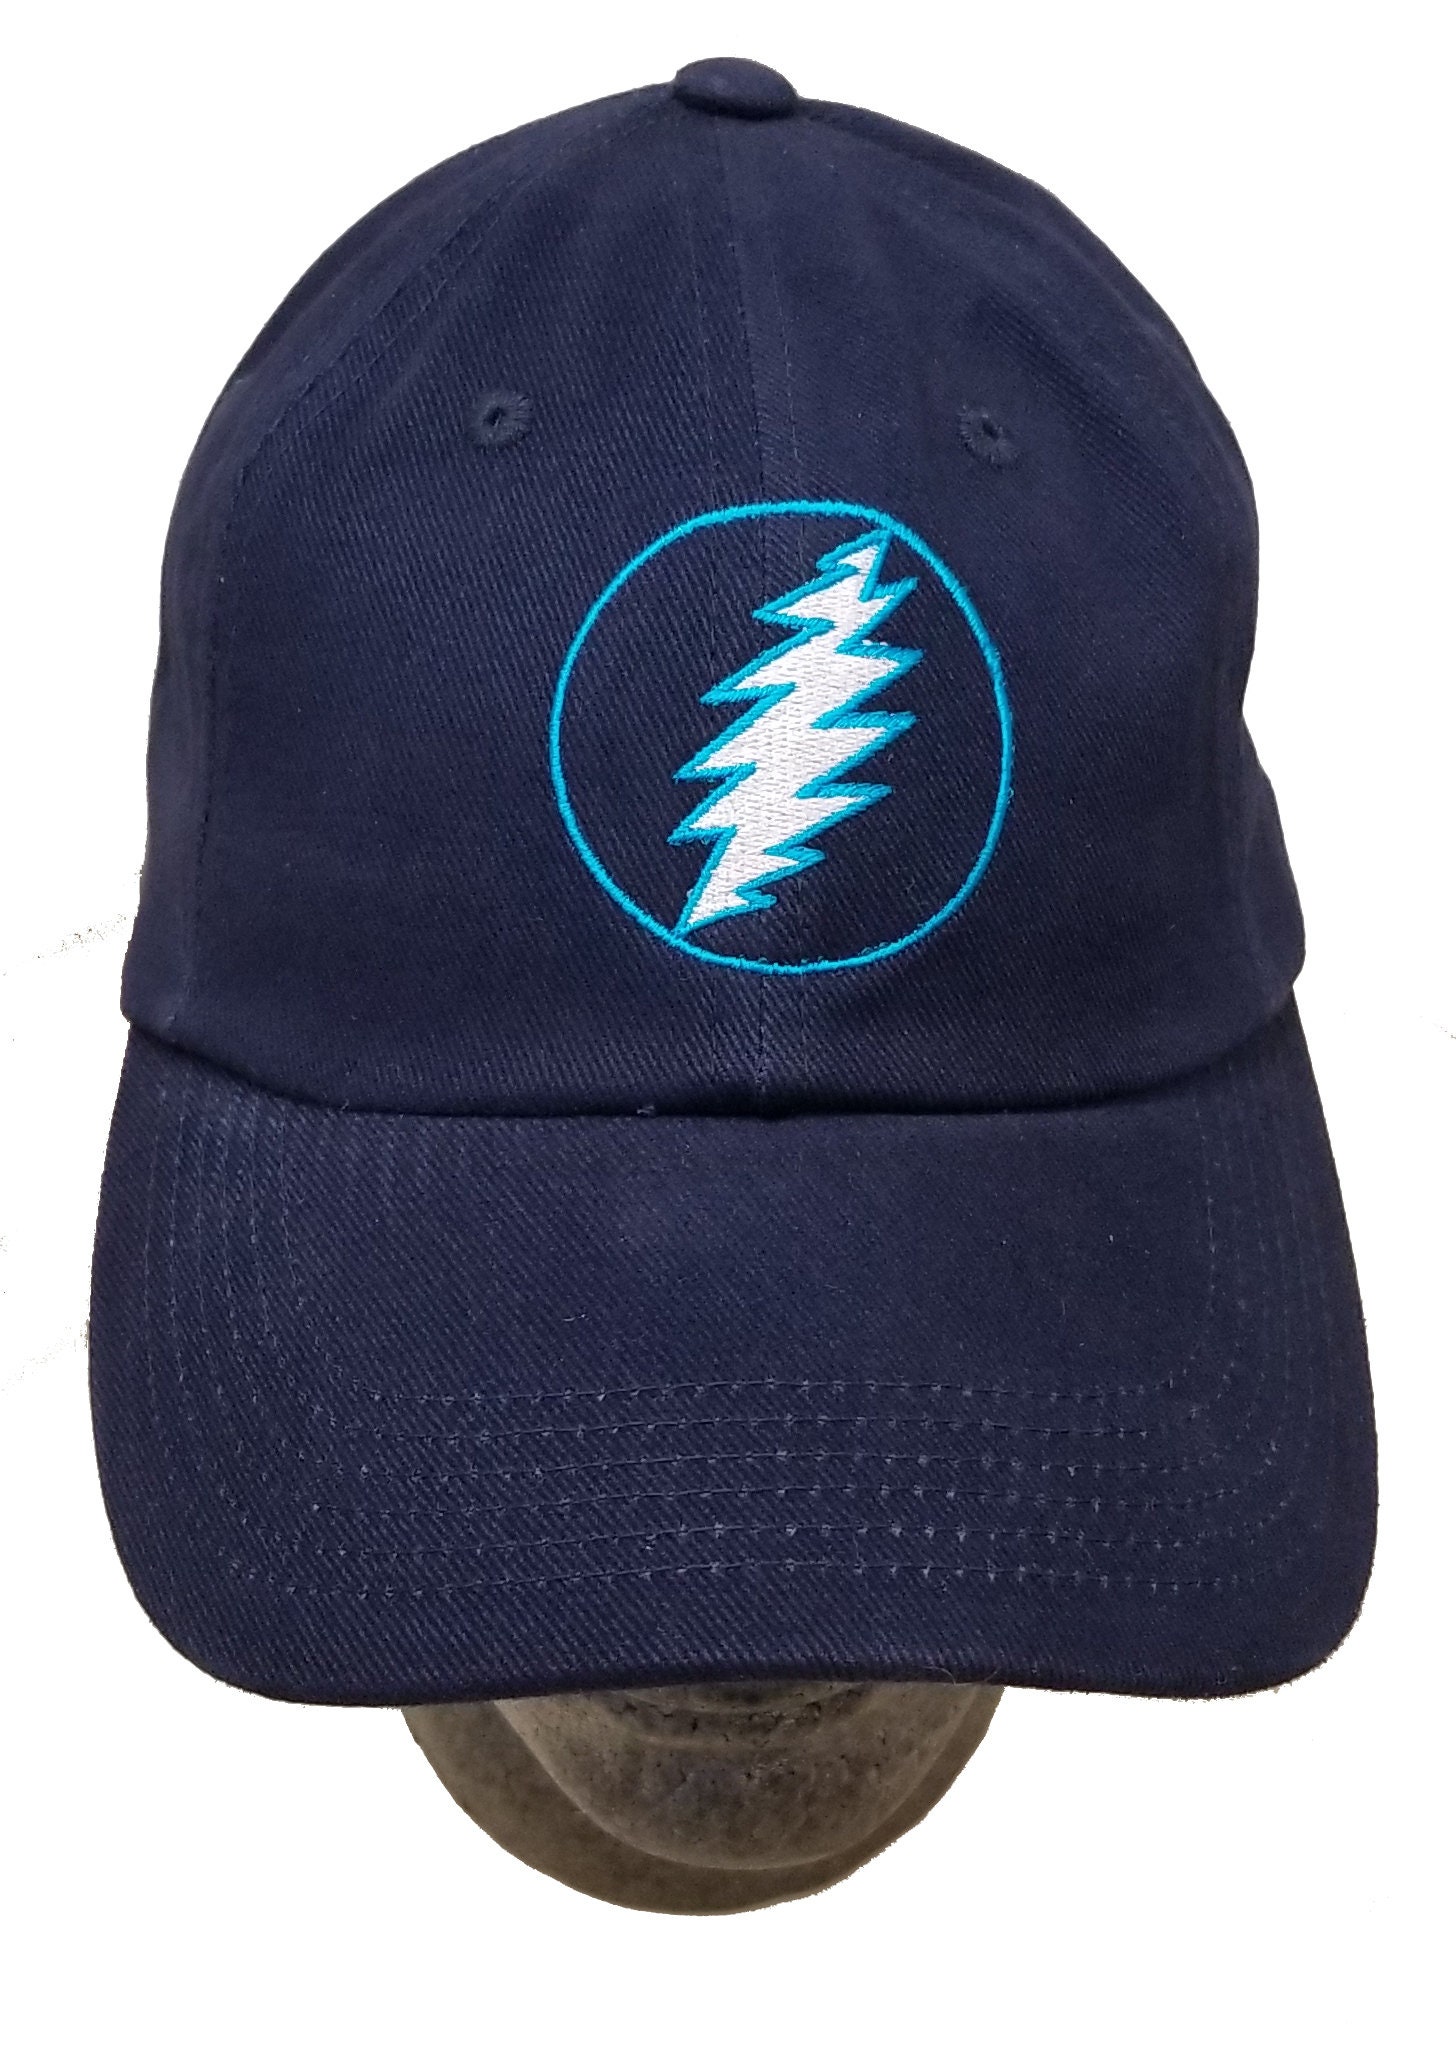 Black Grateful Dead Hat Boltcircle 13 Point Lightning Bolt - Etsy